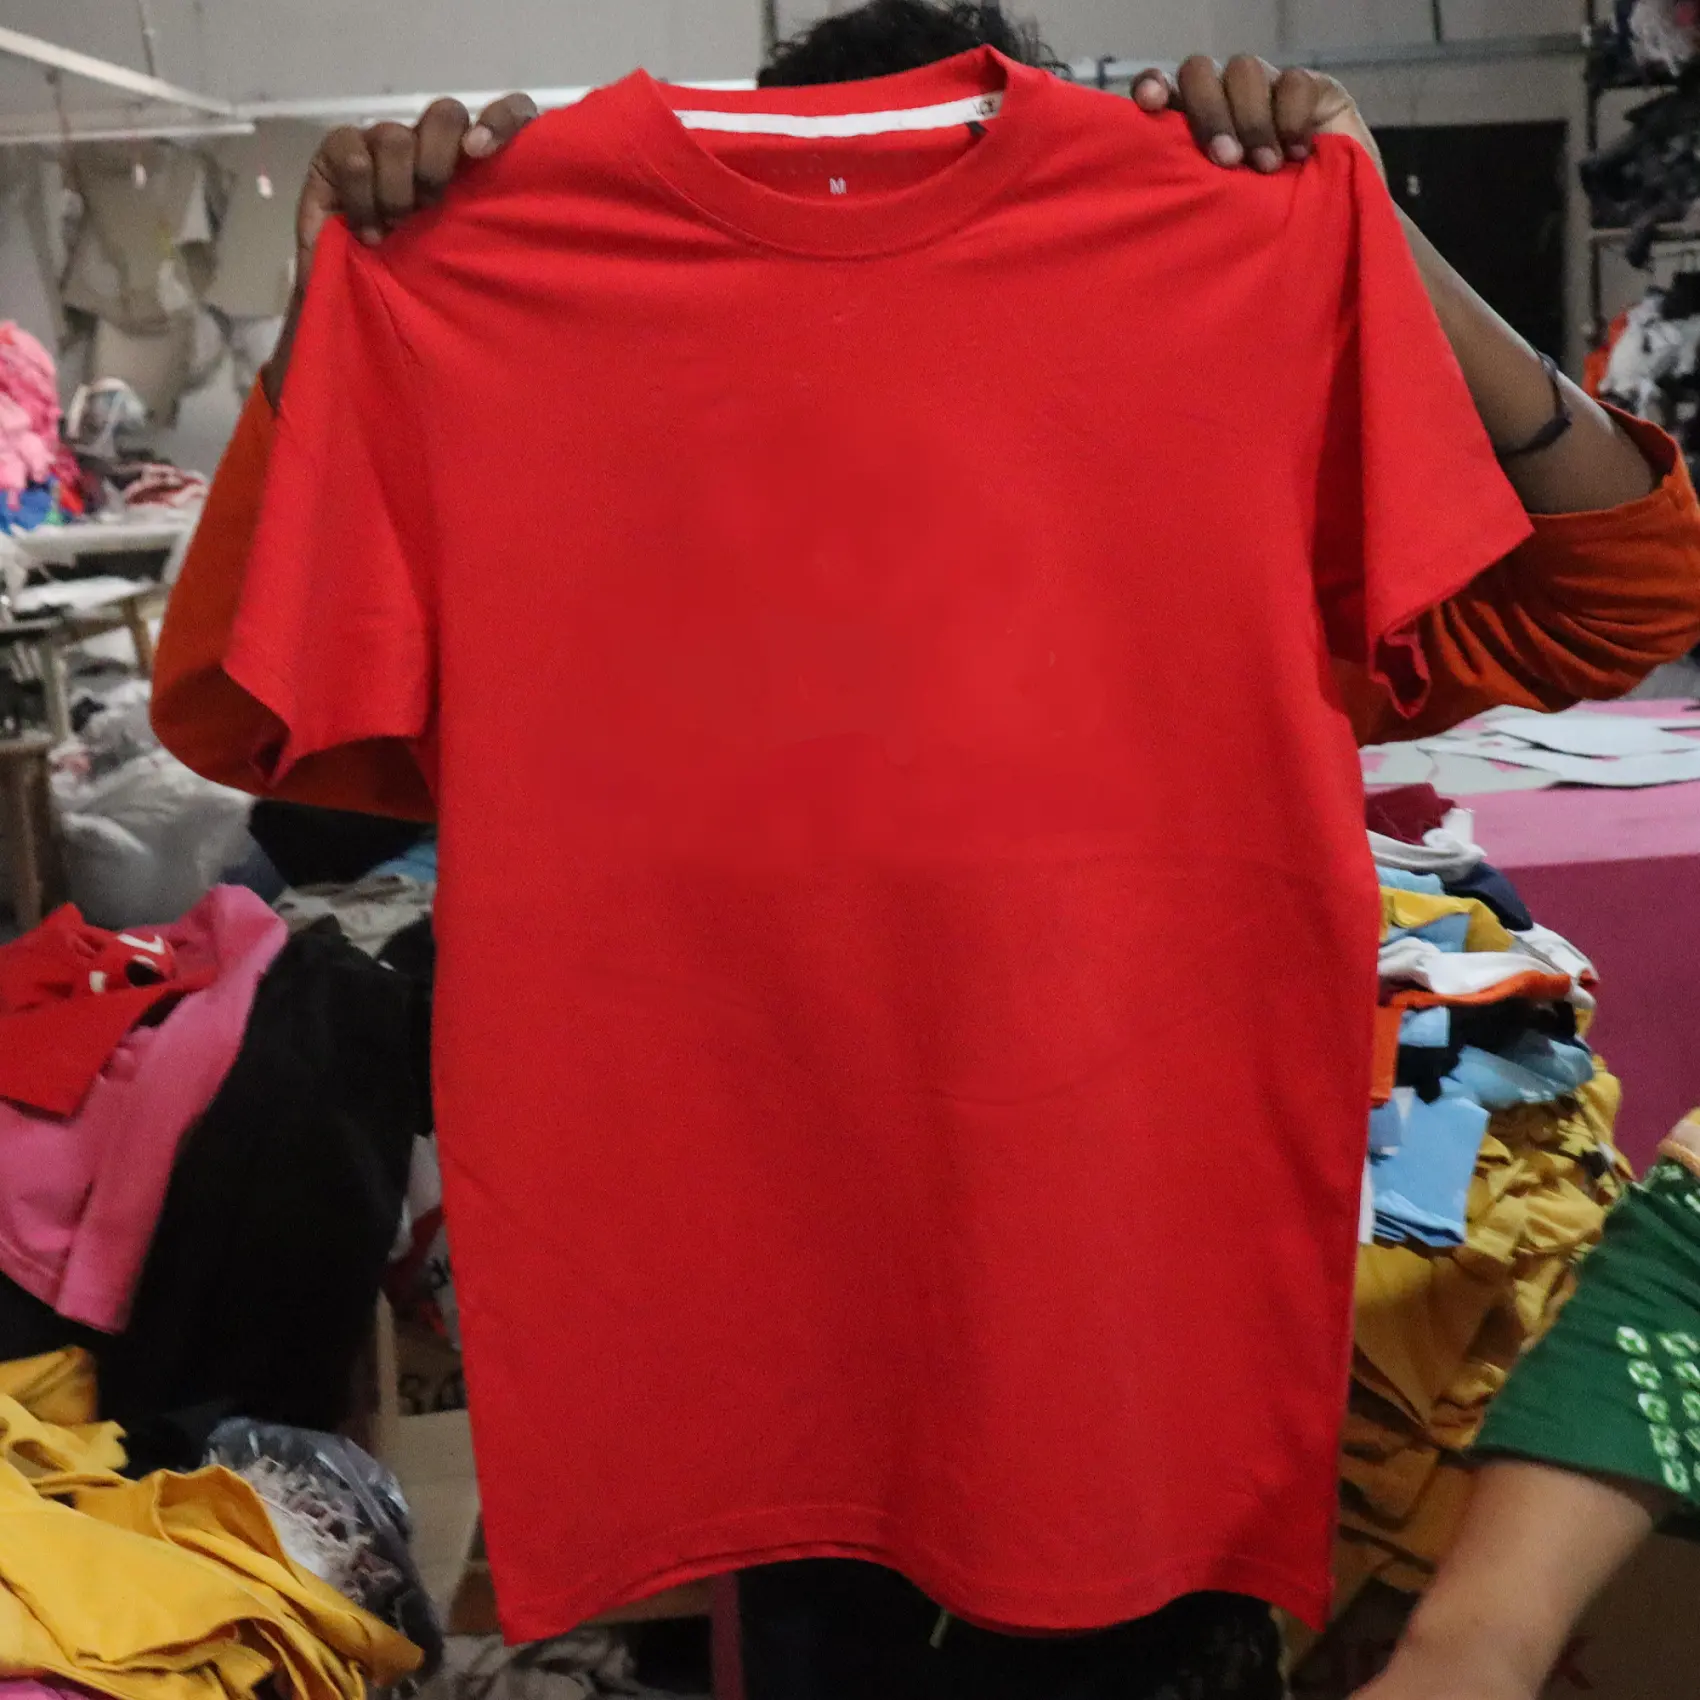 Großhandel Direkt Fabrik Hersteller Überschuss Lager Lot Herren T-Shirt Atmungsaktiv Gute Qualität Baumwolle Herren Casual T-Shirt